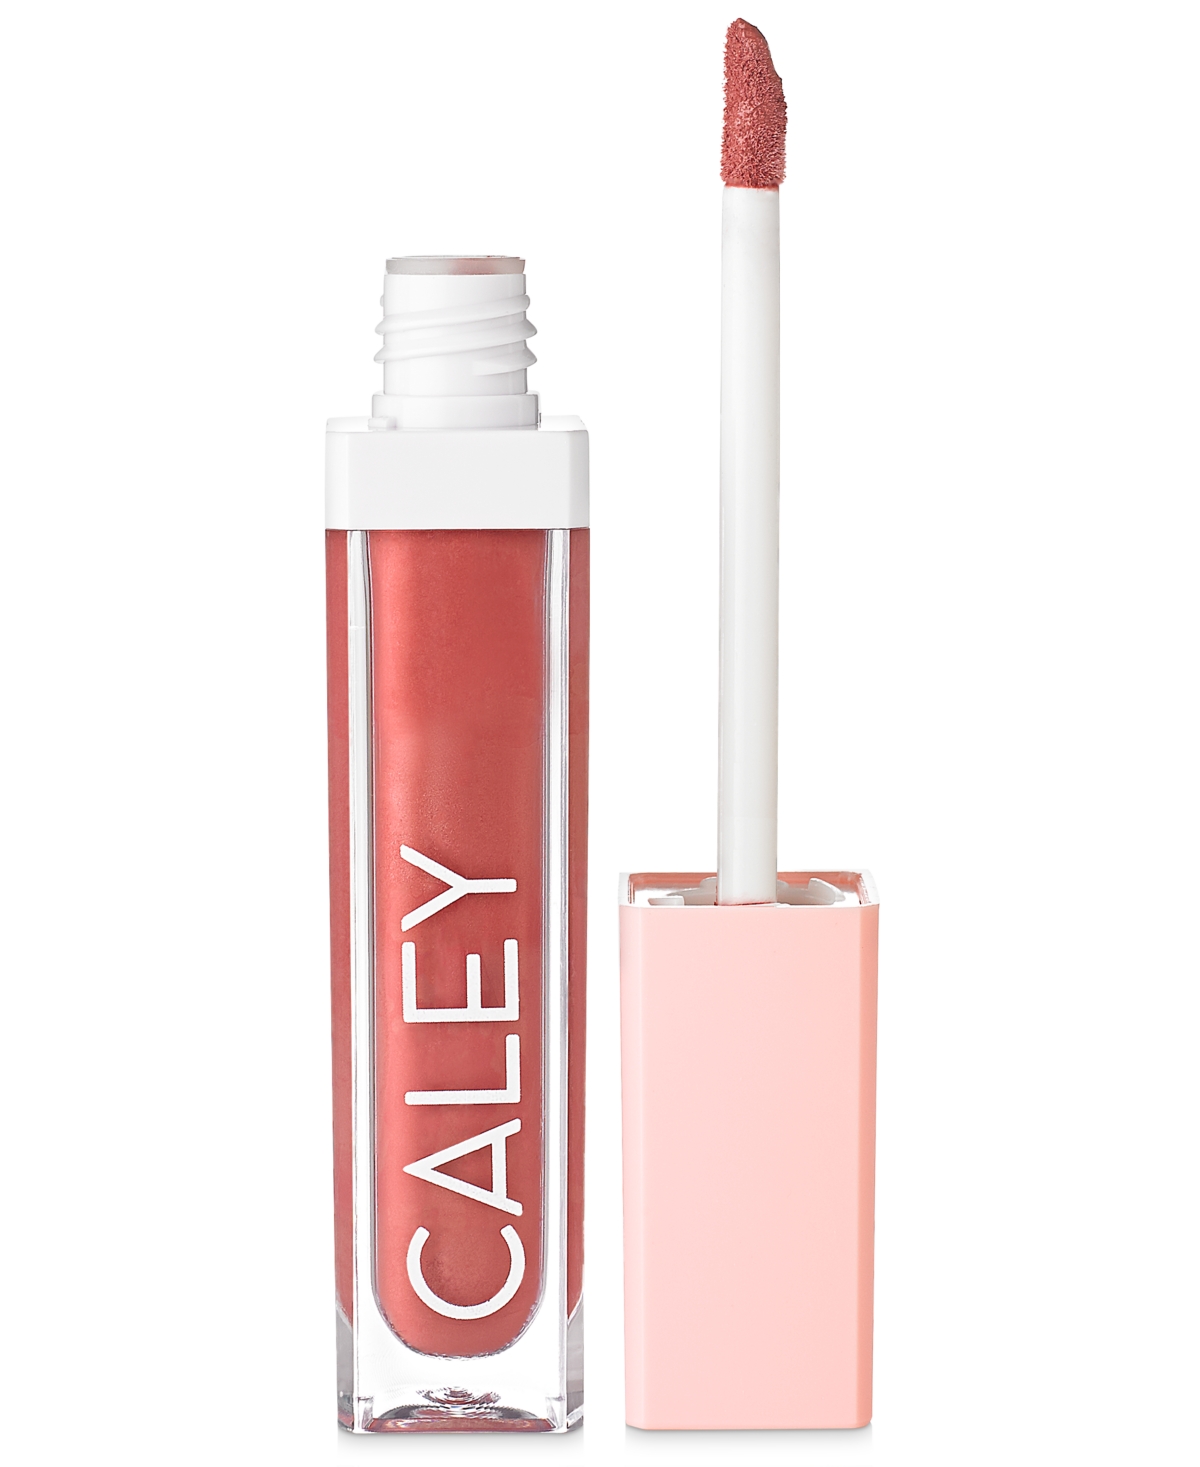 Caley Cosmetics Plumping Color Crush Natural Liquid Lip